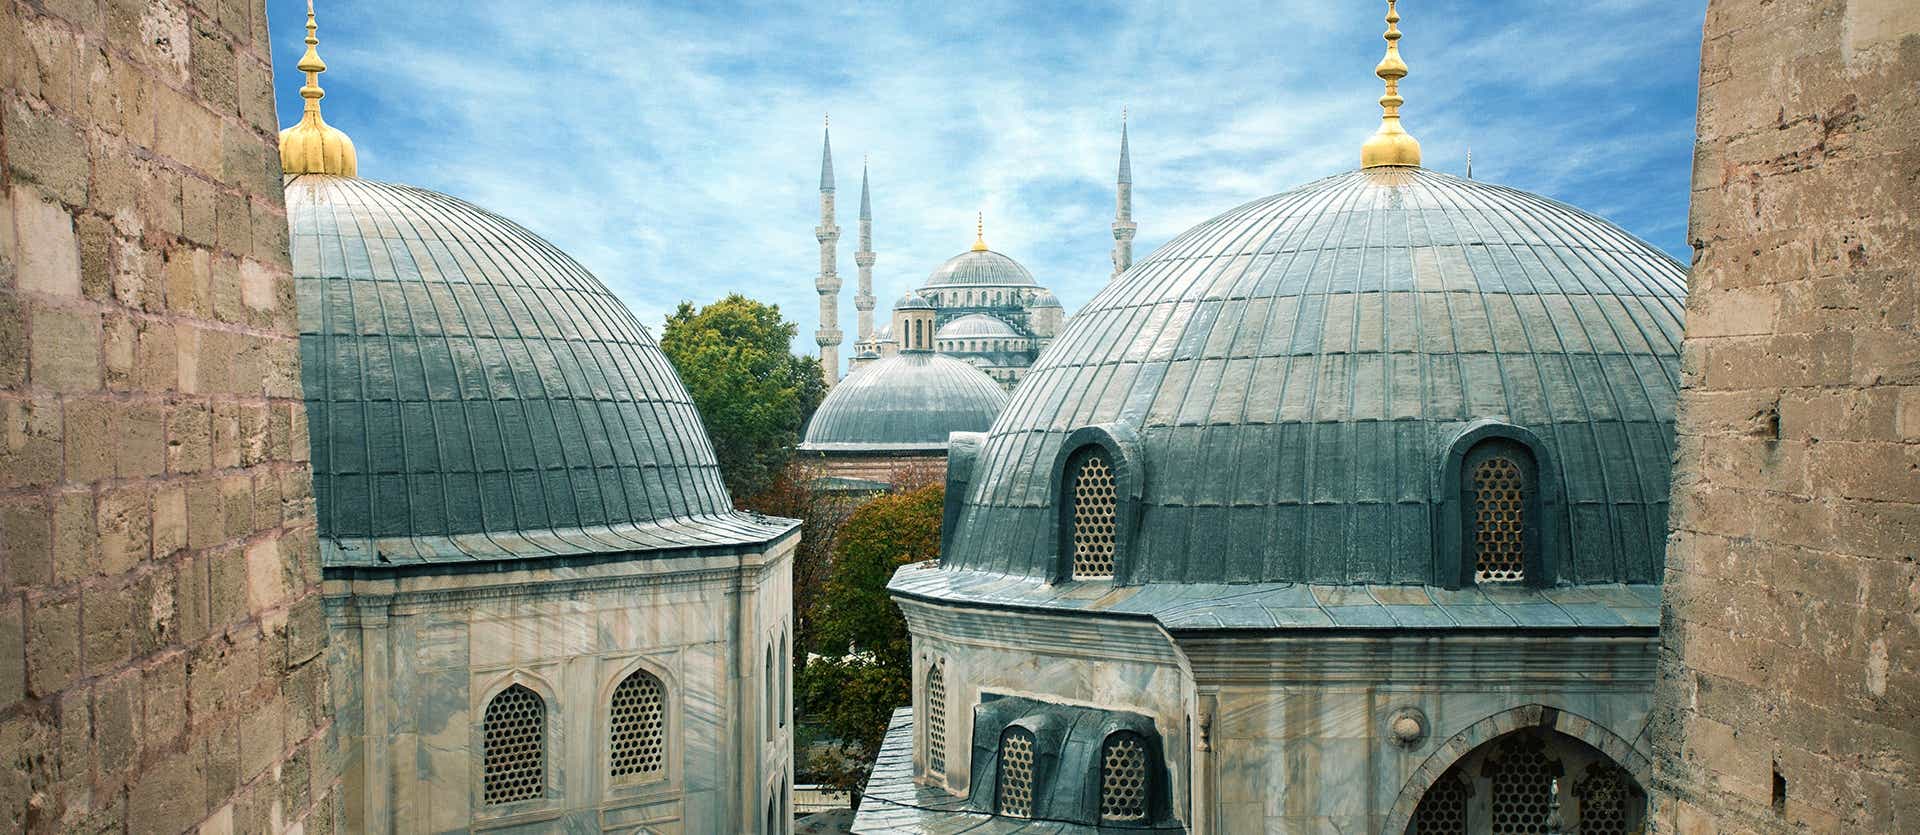 Blue Mosque <span class="iconos separador"></span> Istanbul